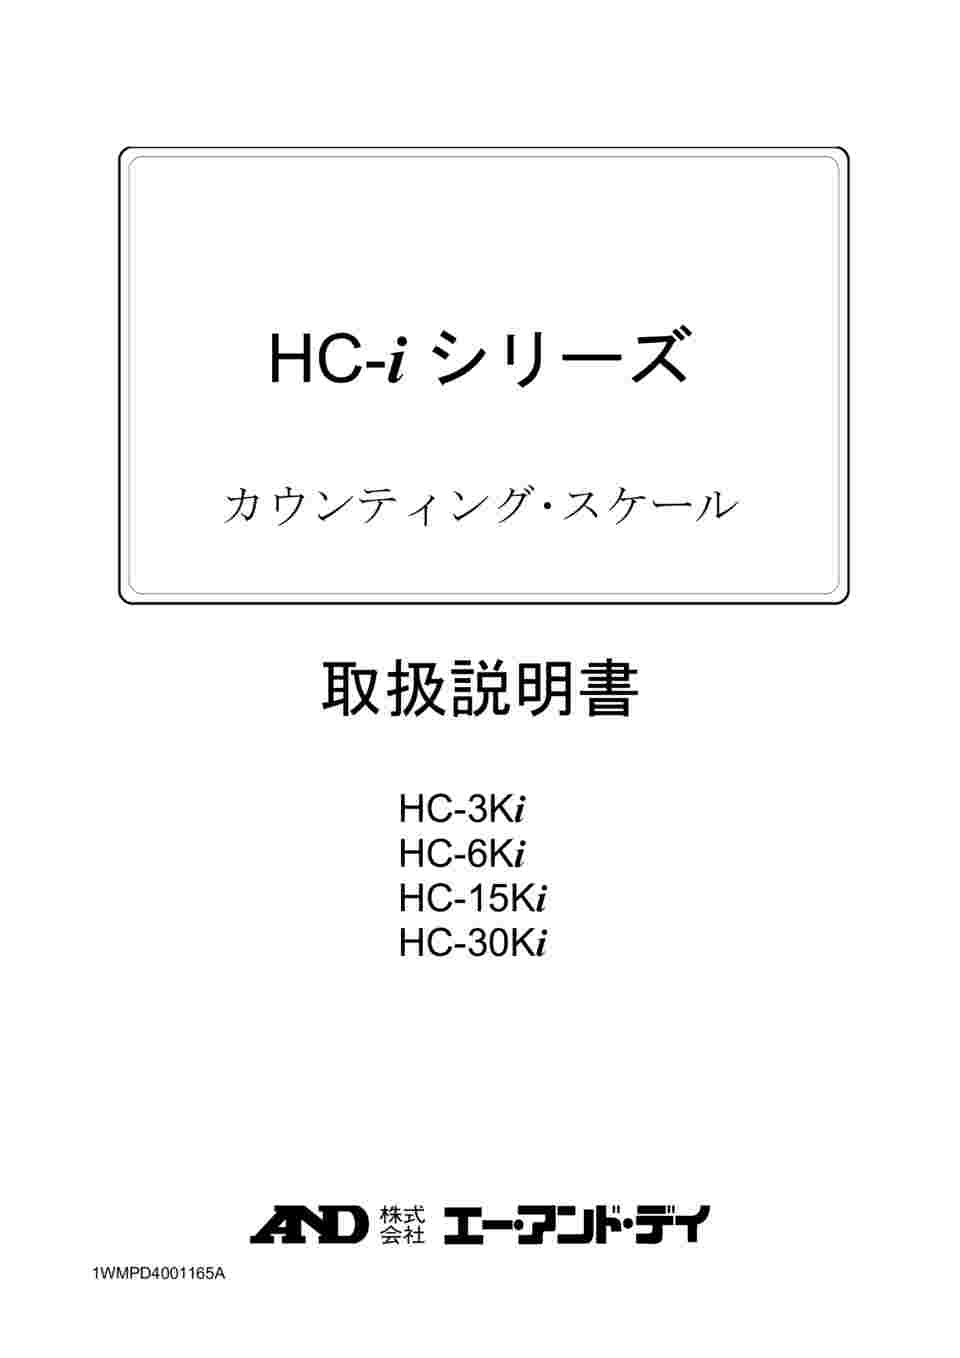 61-4676-76 セパレート可能 カウンティング・スケール(個数計) HC-i ...